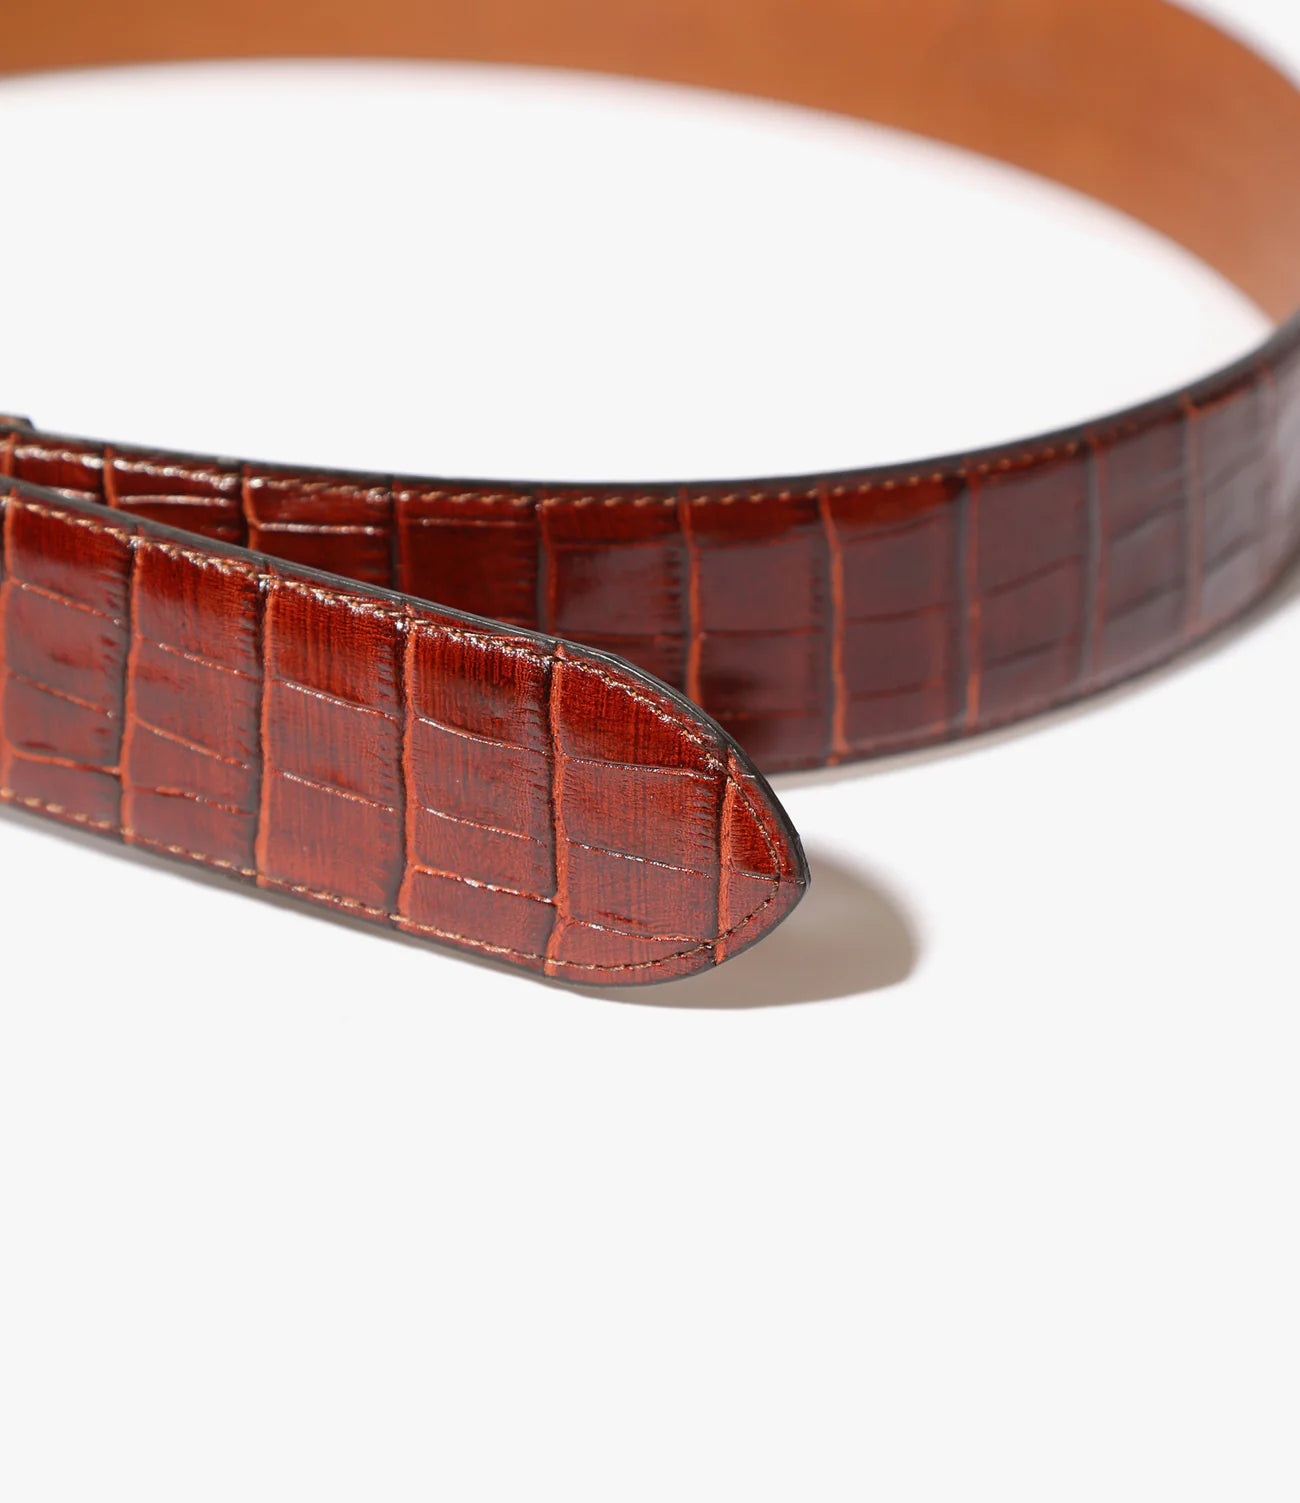 Needles Peace Buckle Belt - Crocodile Embossed Leather